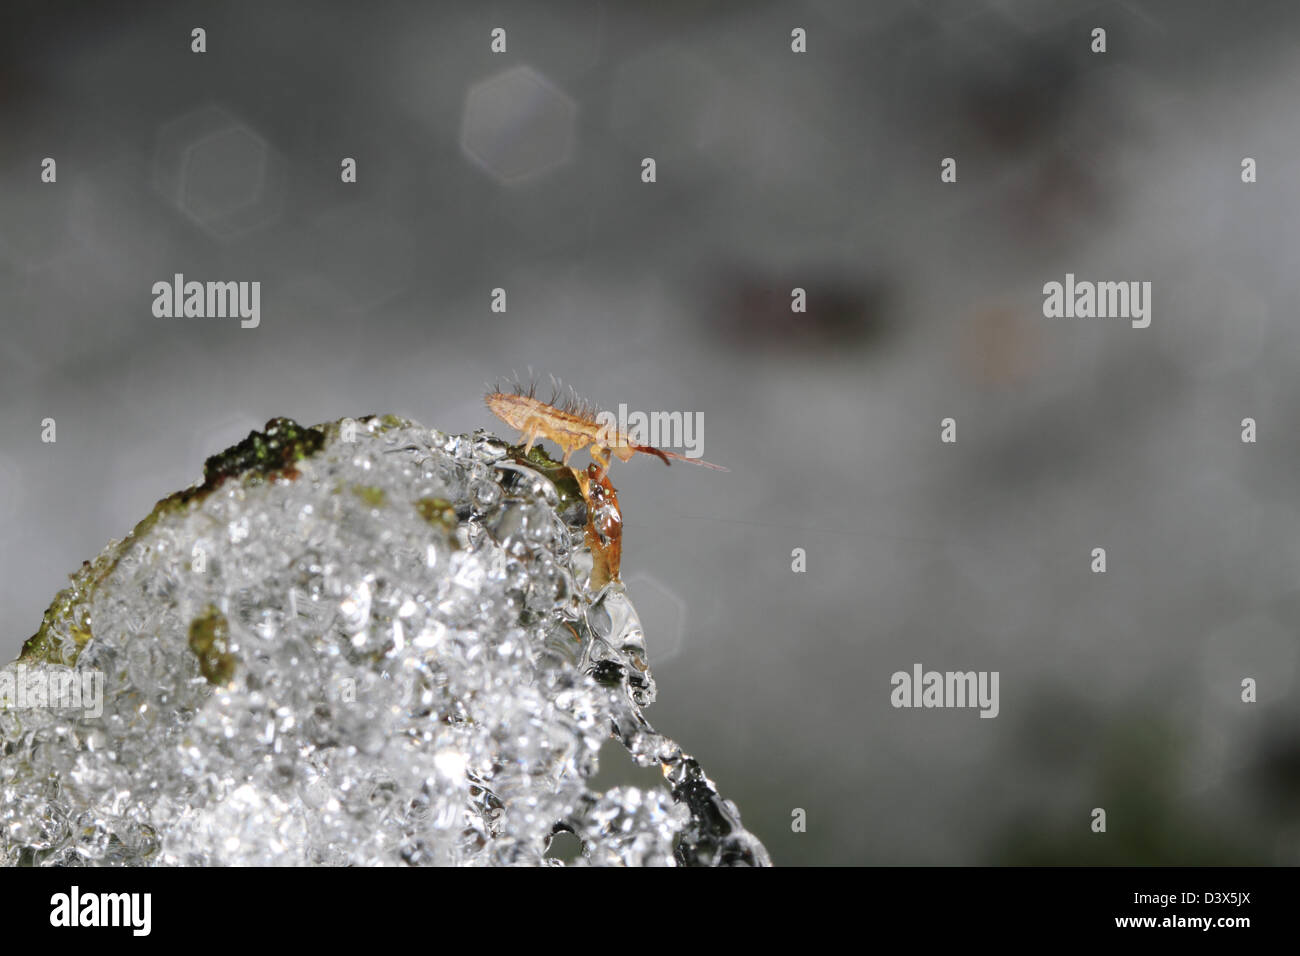 Auch im Winter sind kleine wirbellose Tiere aktiv. Hier ruht ein Springschwänze (Collembolen) auf Schnee schmelzen. Stockfoto